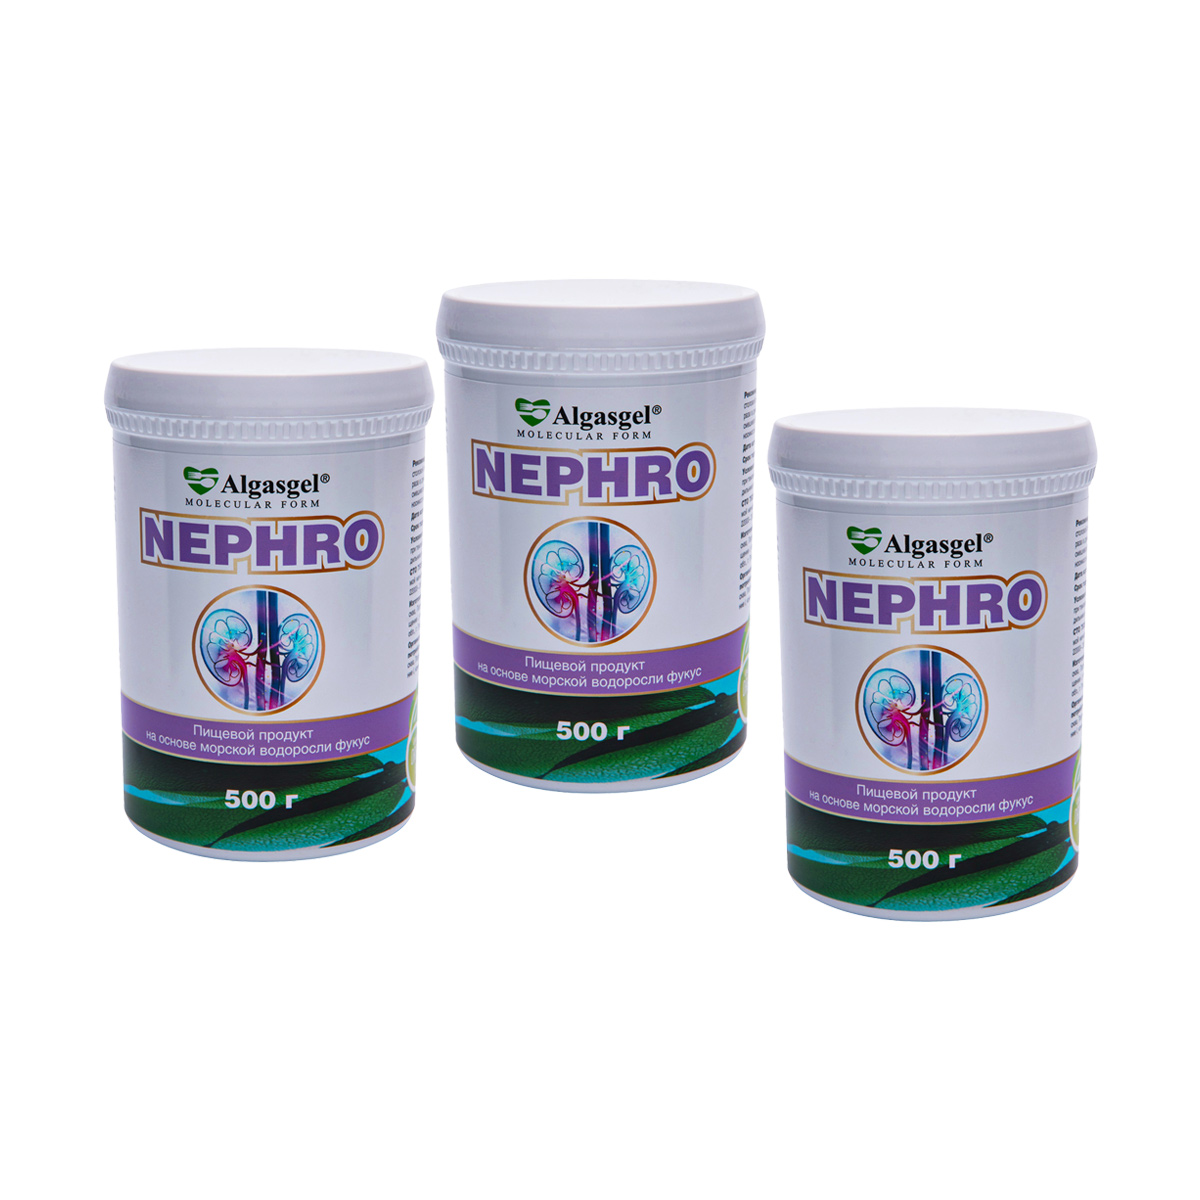 Algasgel Nephro для комплексного оздоровления почек и мочевыделительной системы (2 уп. по 500 г + 1 в подарок) endo 2 шт по 500 г 1 в подарок